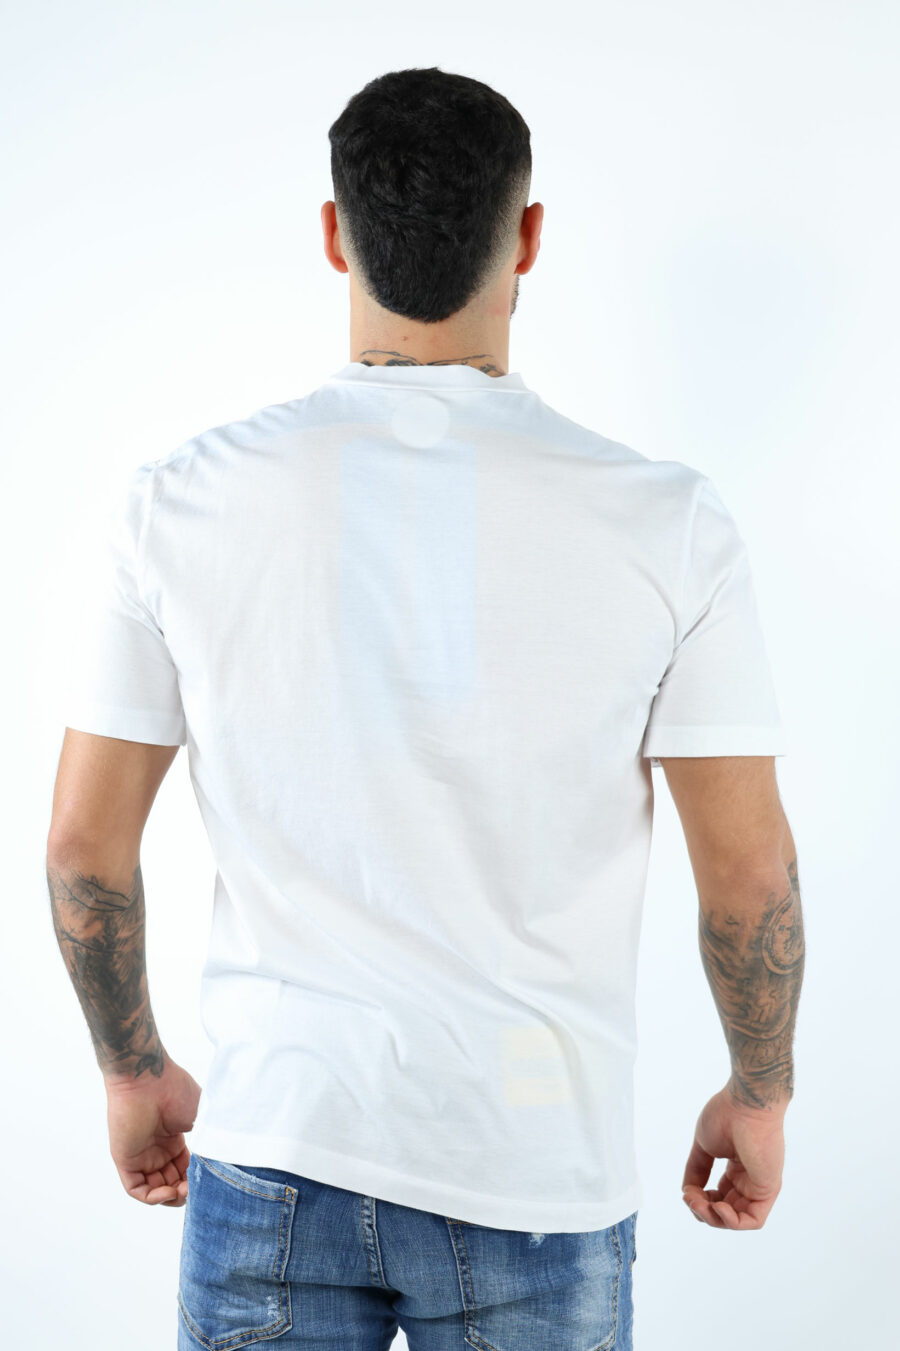 Weißes T-Shirt mit einfarbig geprägtem Blatt Maxilogo - 106621